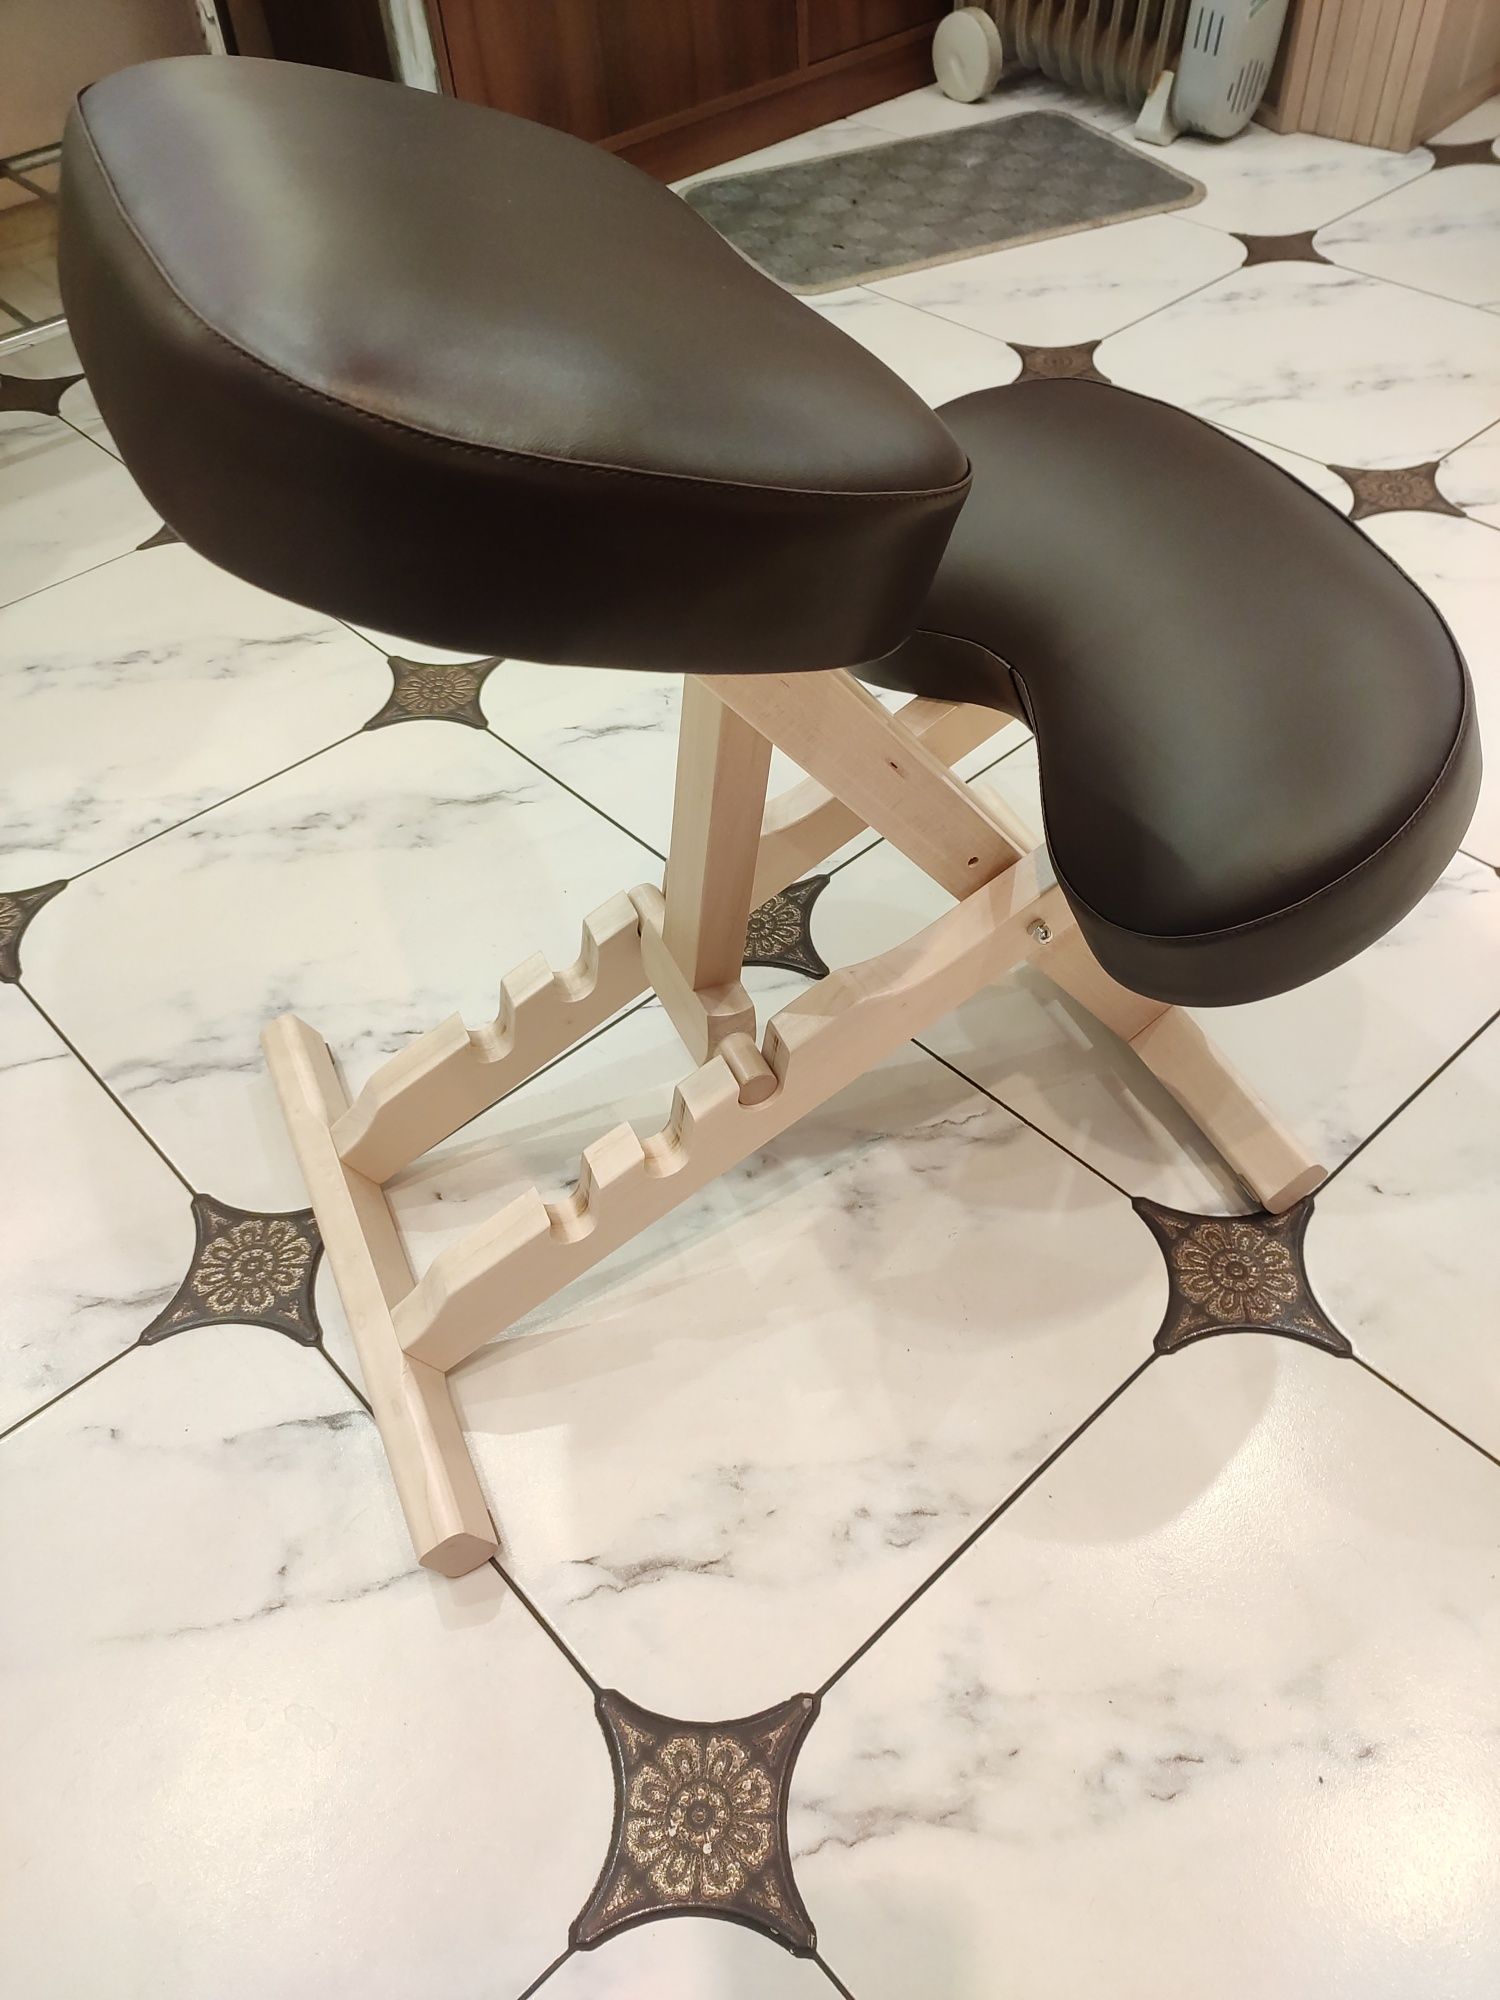 Коленный стул для исправления сколиоза и осанки